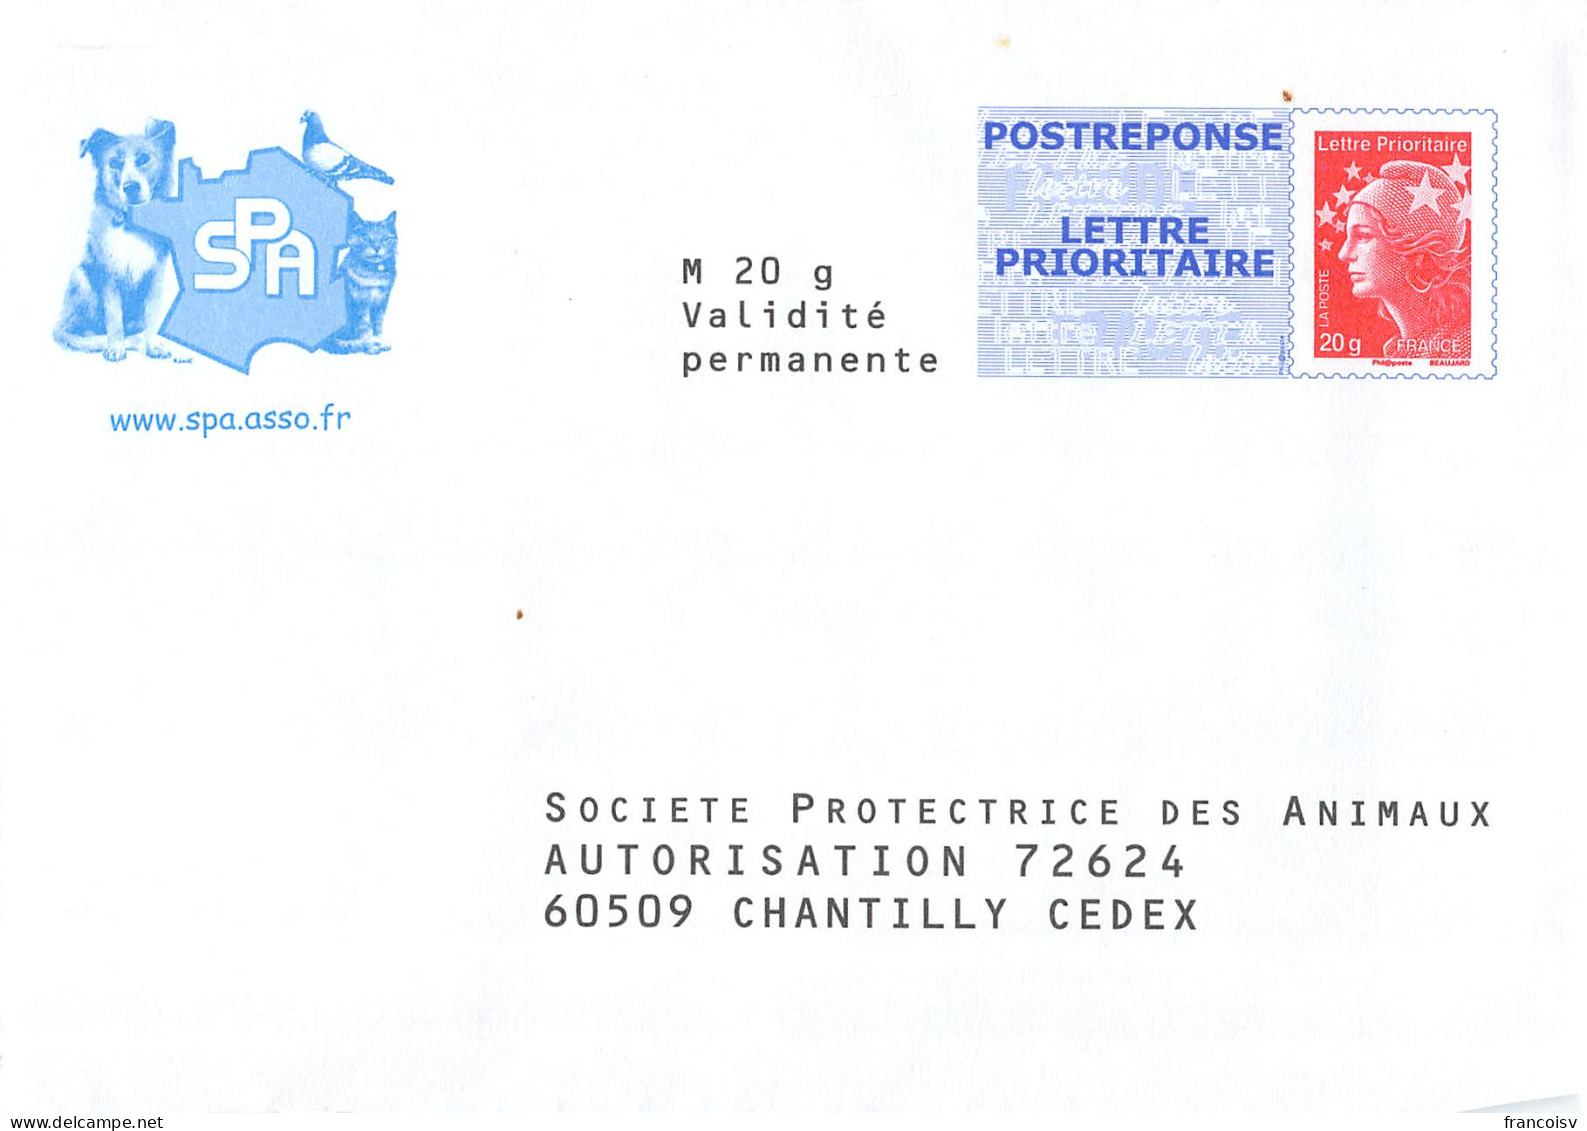 Lot de 33 enveloppes neuves PAP Prêt à poster Postreponse Marianne Ciappa kawena beaujard luquet lamouche... L2